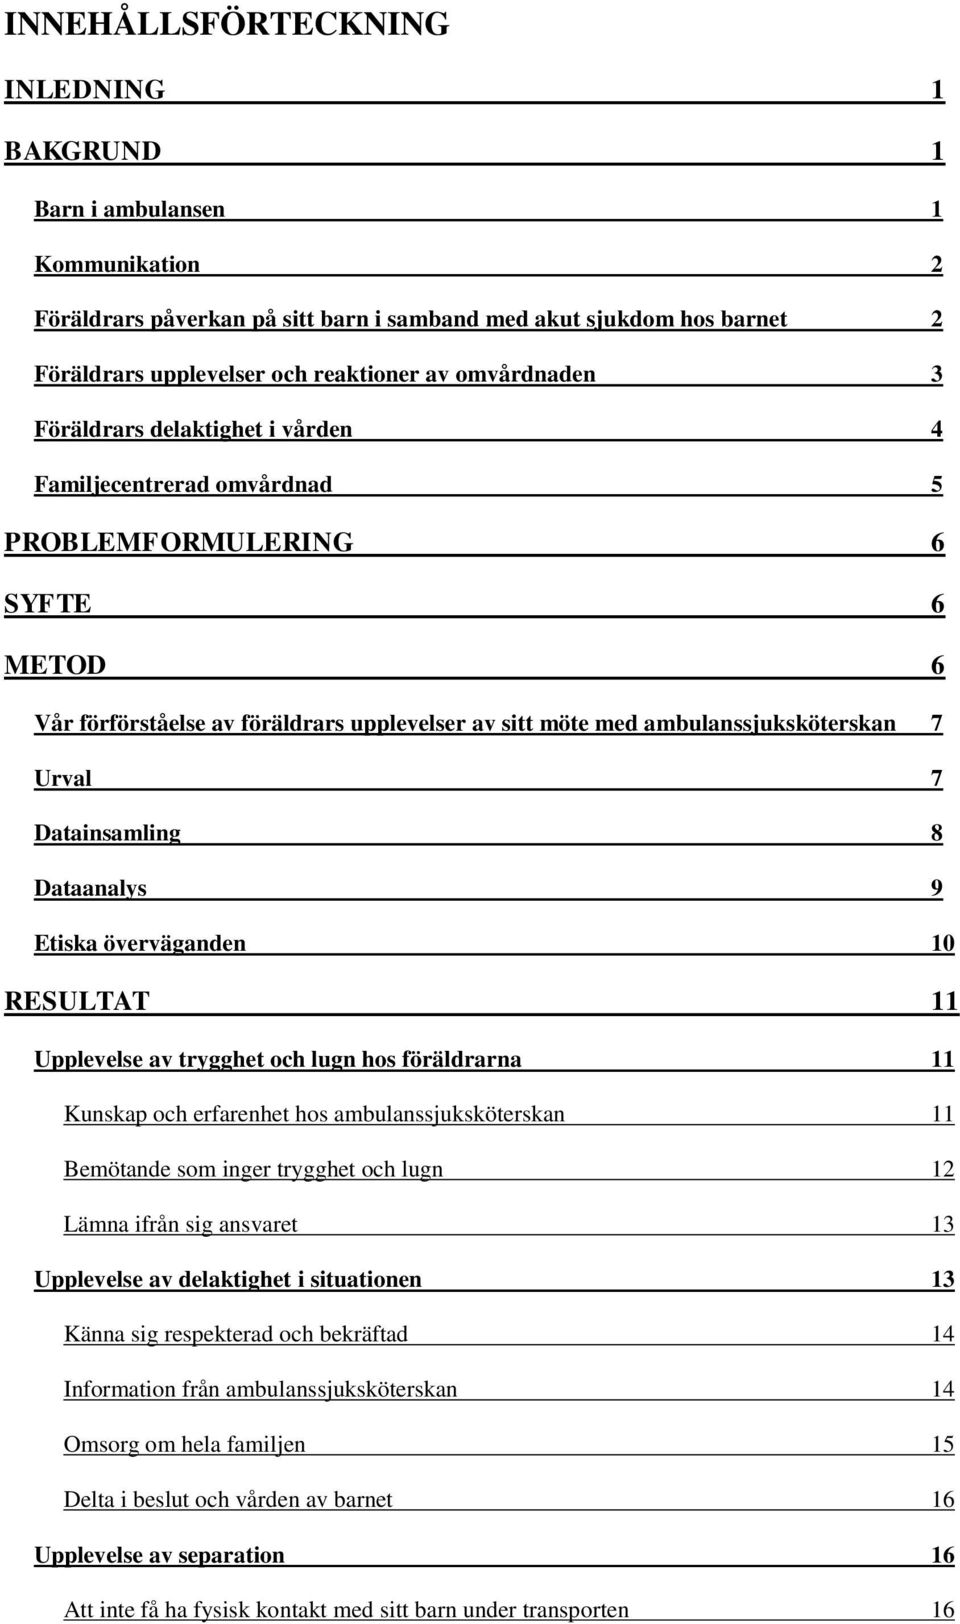 Urval 7 Datainsamling 8 Dataanalys 9 Etiska överväganden 10 RESULTAT 11 Upplevelse av trygghet och lugn hos föräldrarna 11 Kunskap och erfarenhet hos ambulanssjuksköterskan 11 Bemötande som inger